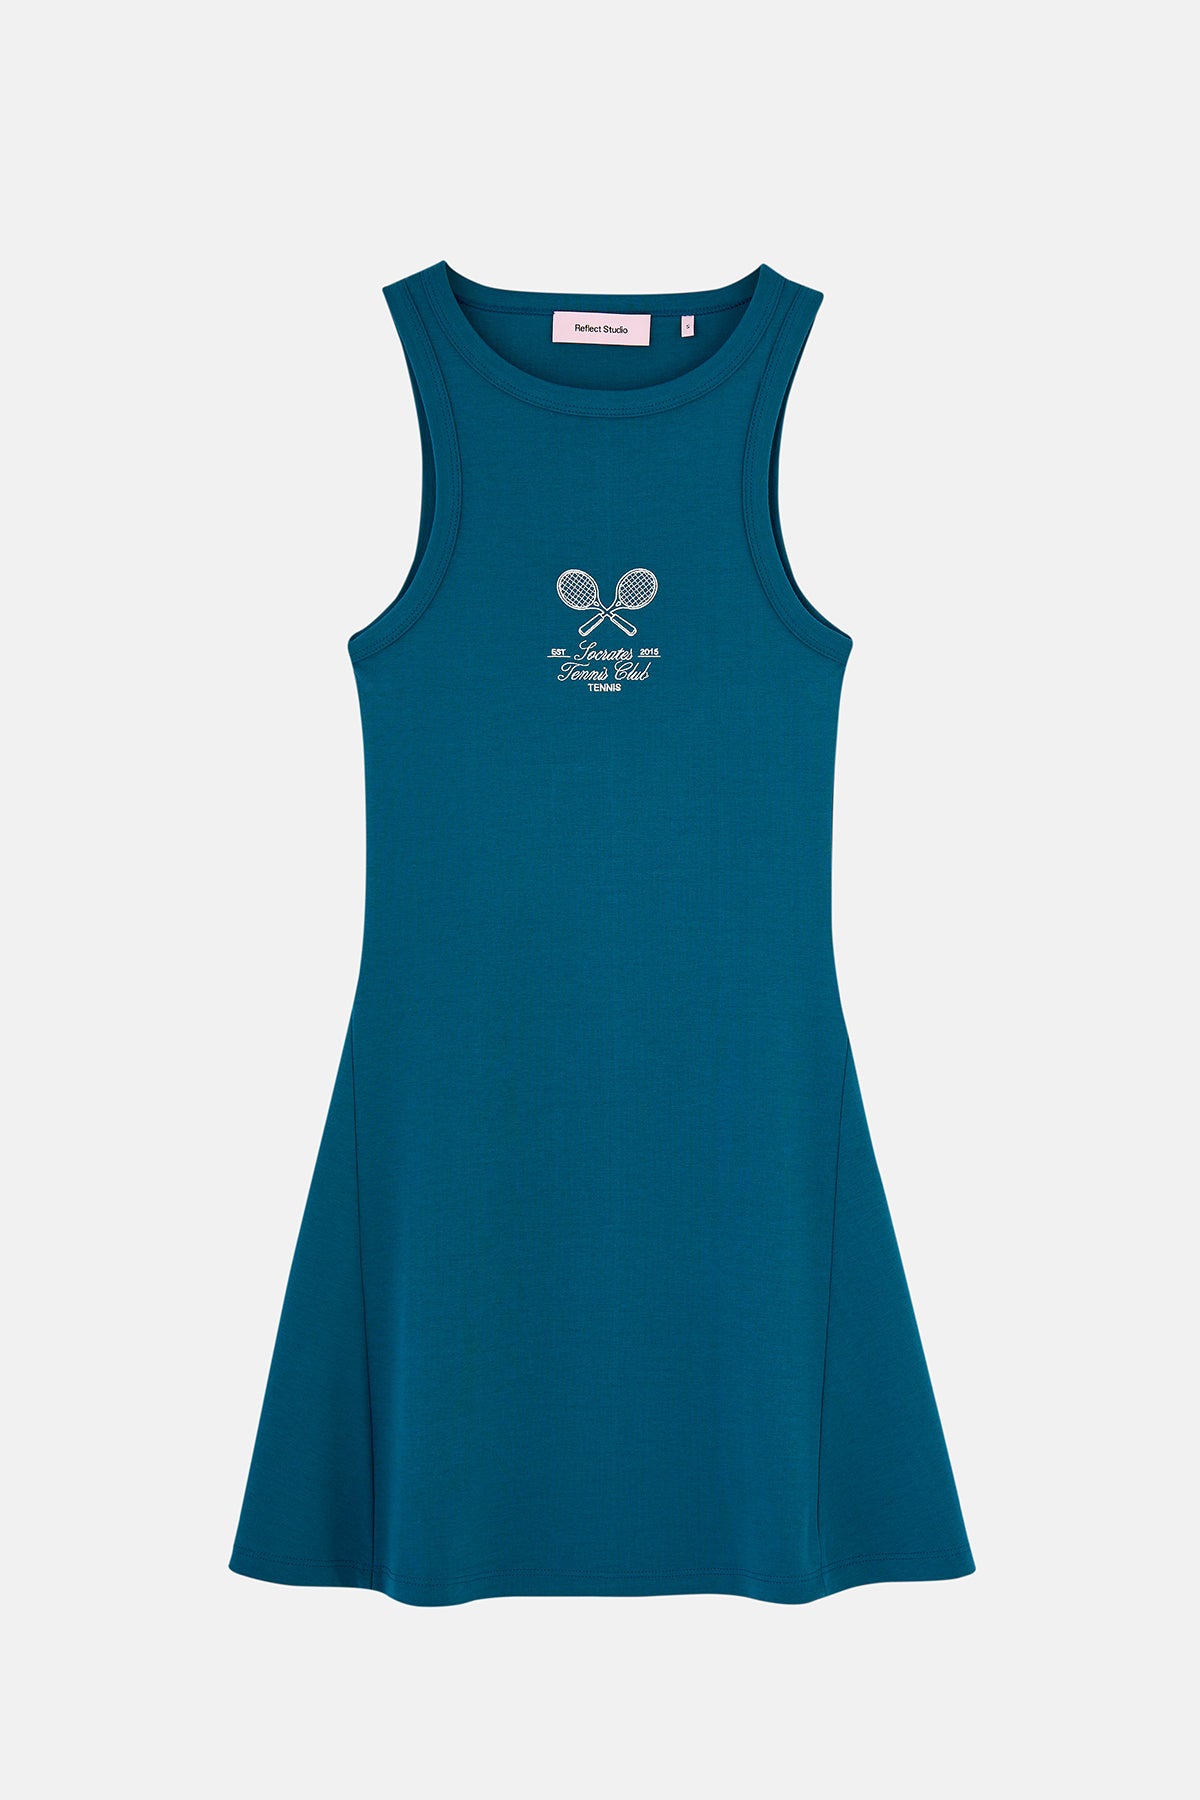 Socrates Tennis Club  Premium Elbise - Mavi